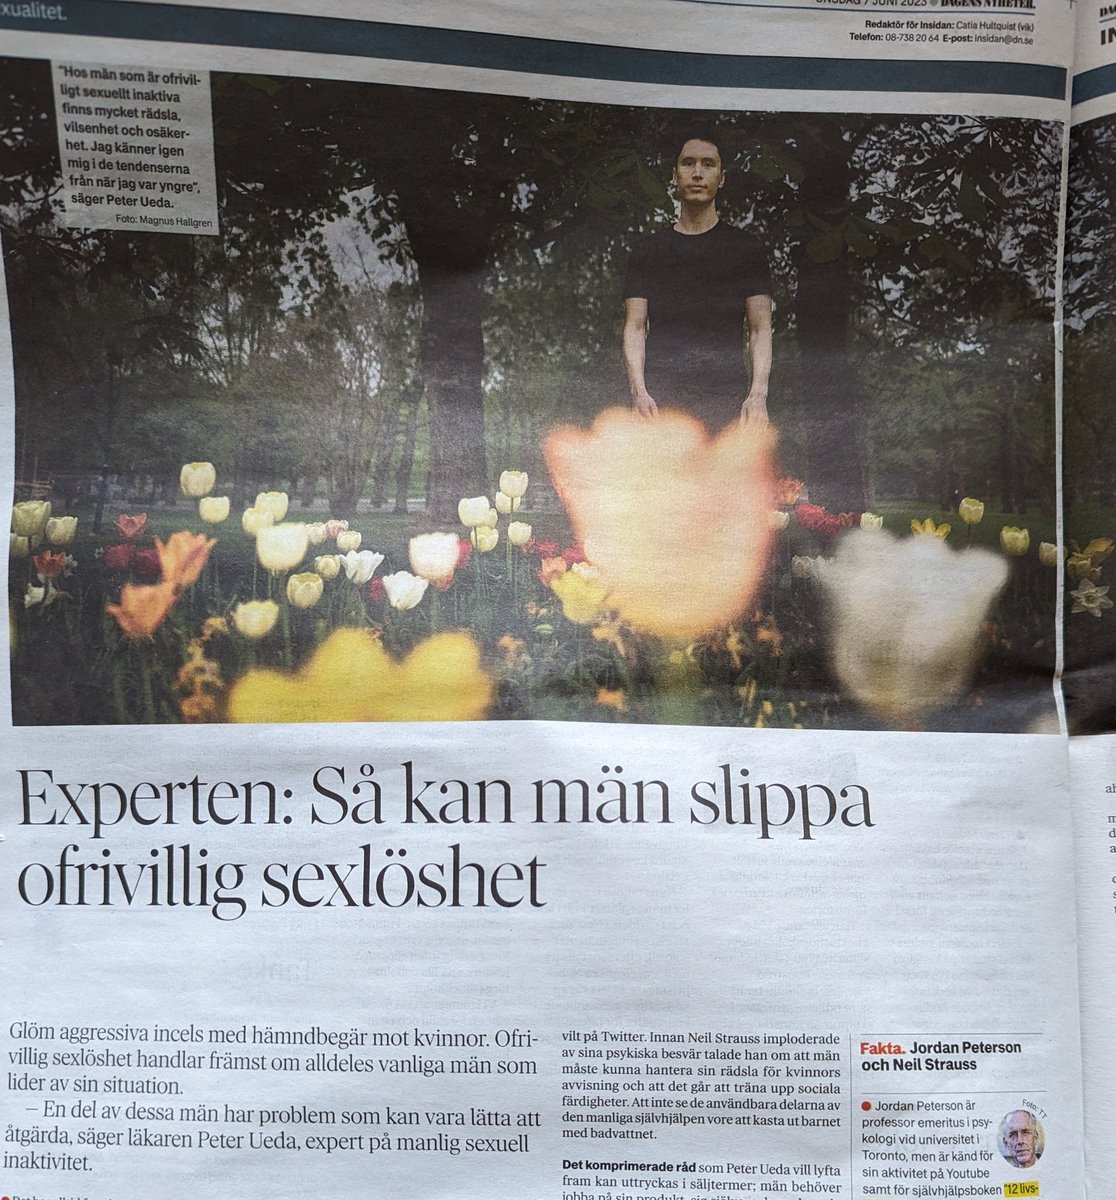 スウェーデン国内のDTバズりが続いております。Svenska Dagbladet とDagens Nyheter から本についての取材を受けました。キモシェアハウスの写真も提供したのですが、どっちもなぜか公園の花の写真になりました。